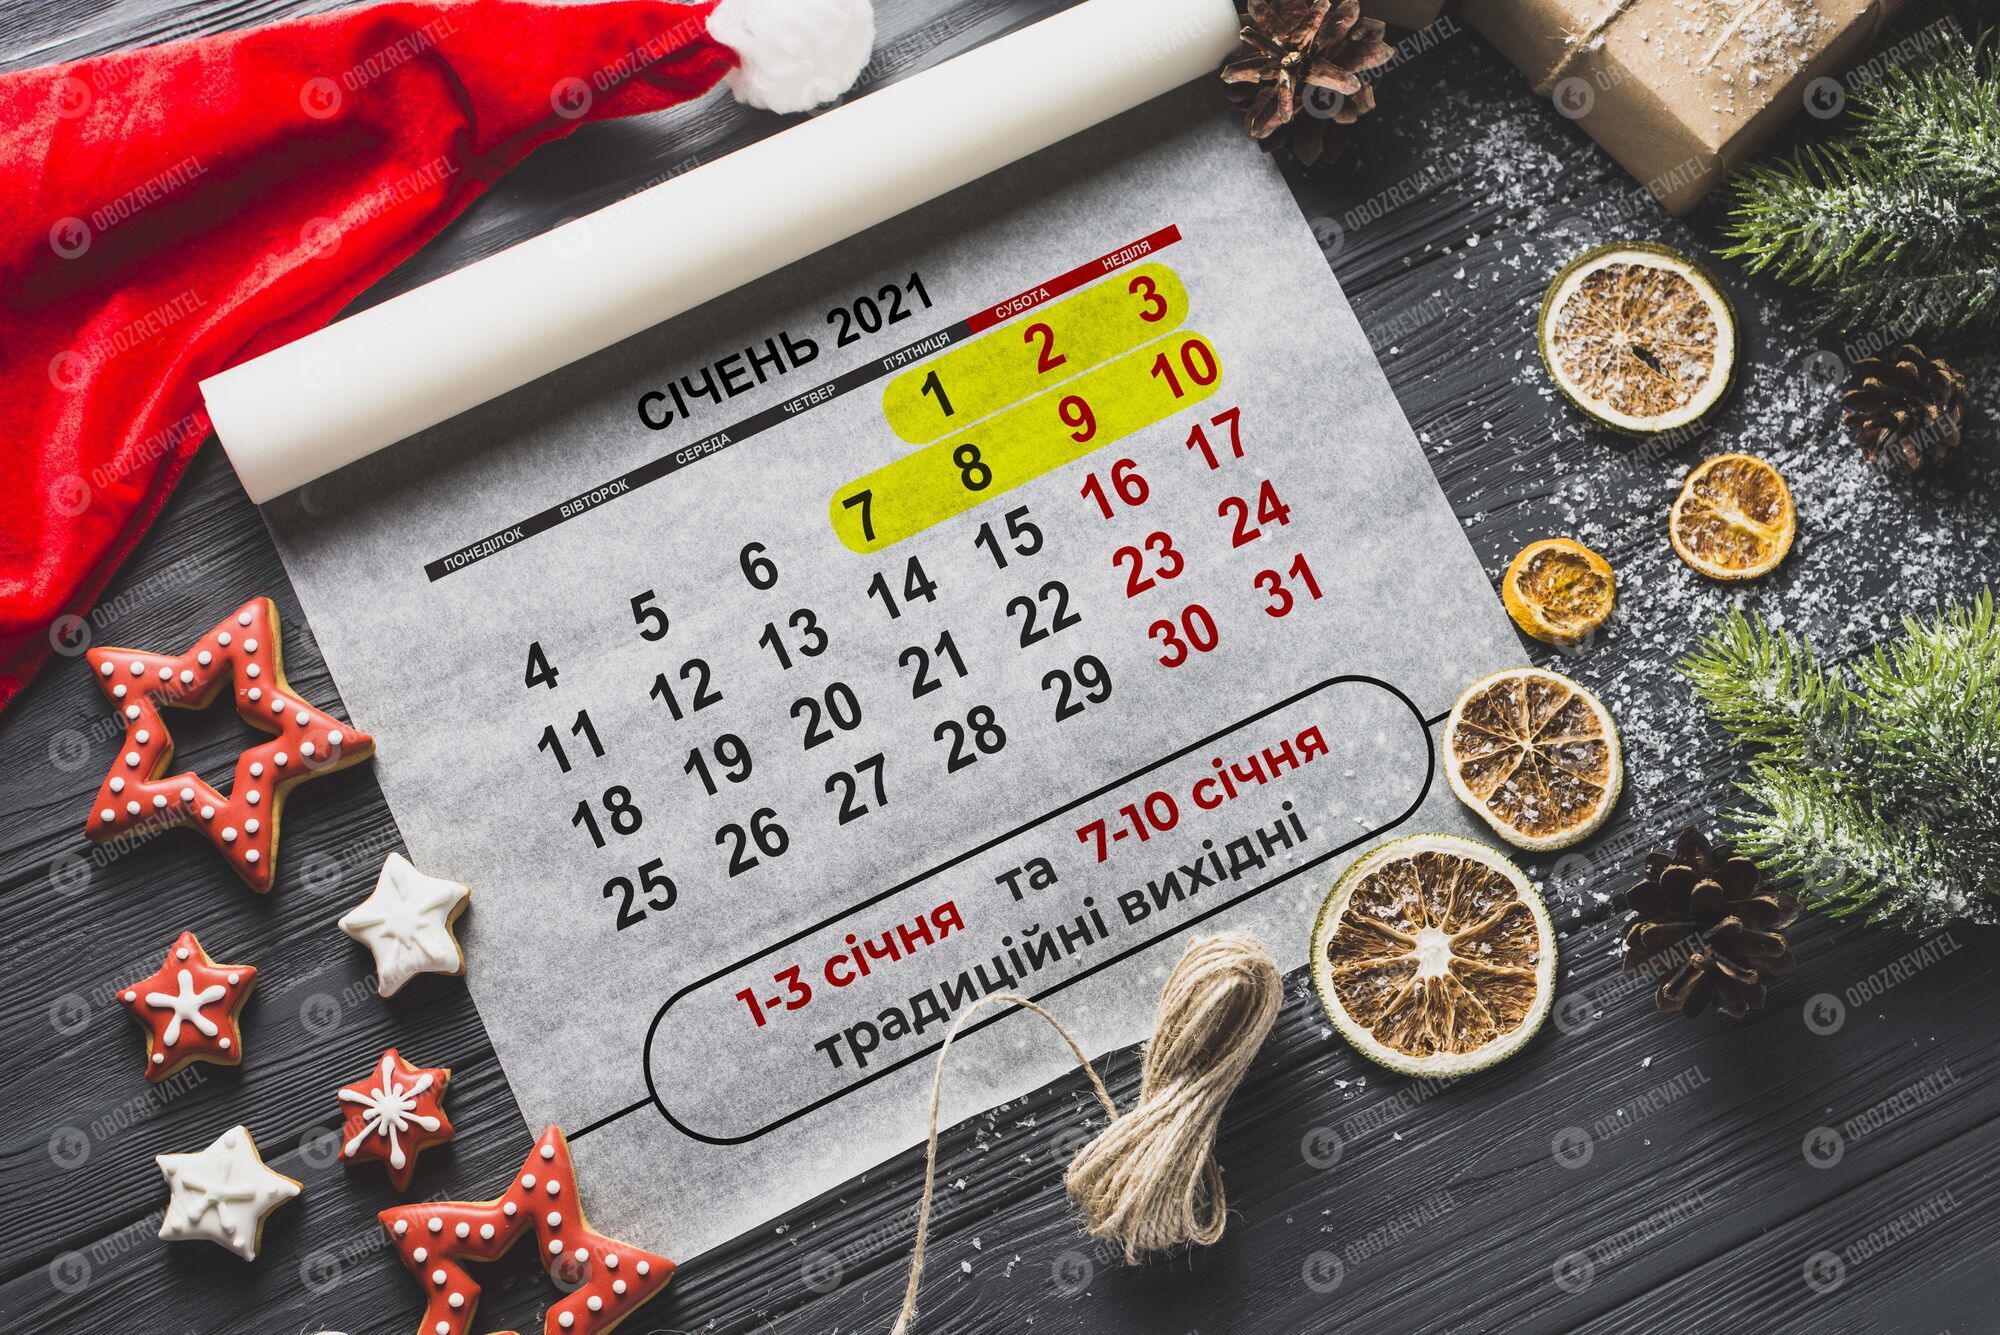 У січні 2021 року в Україні буде 12 офіційних вихідних і 19 робочих днів